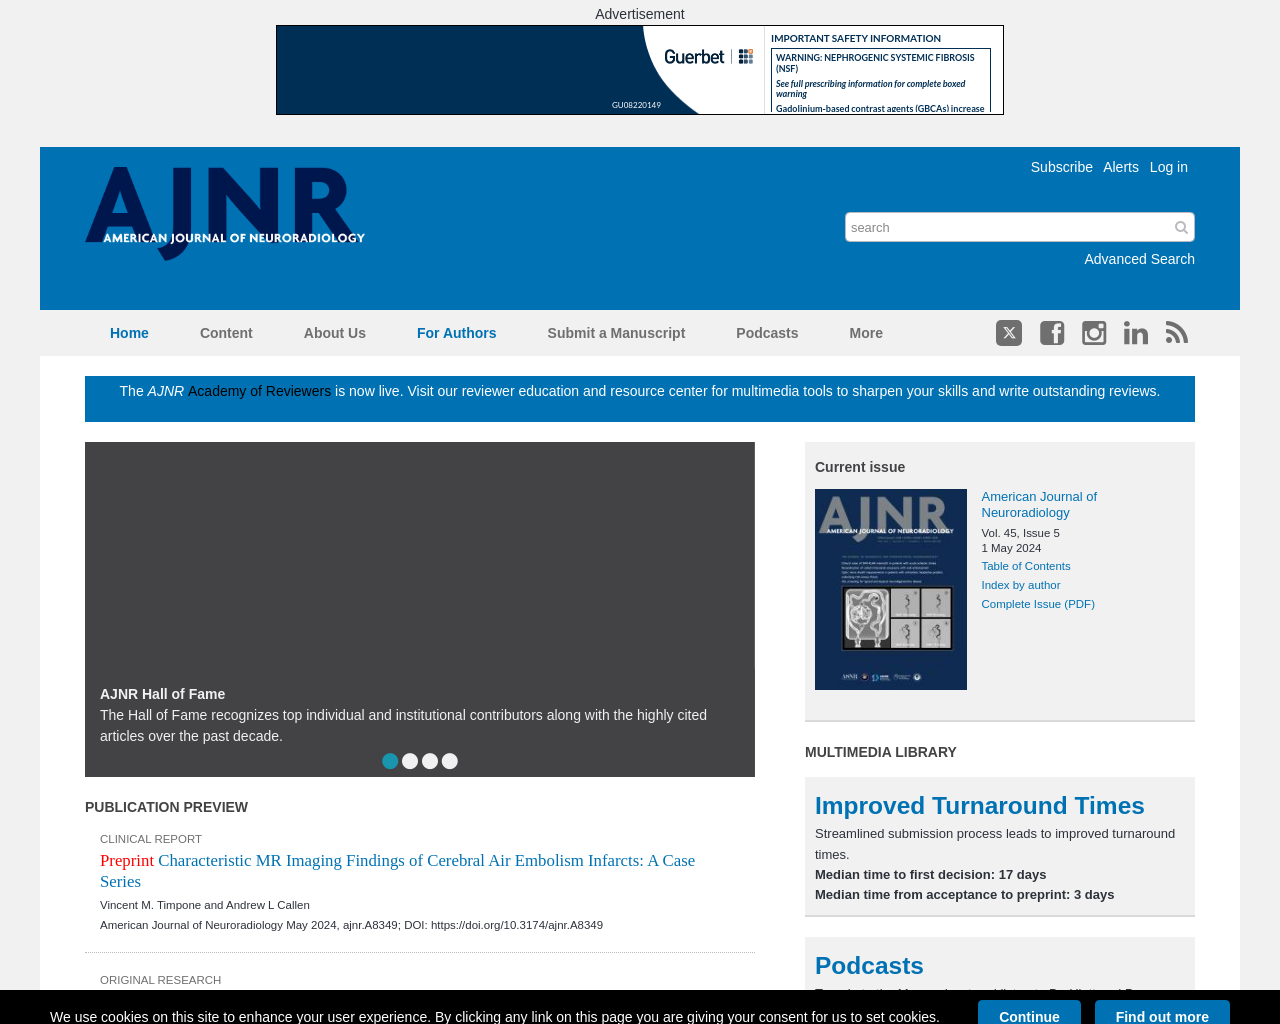 ajnr.org